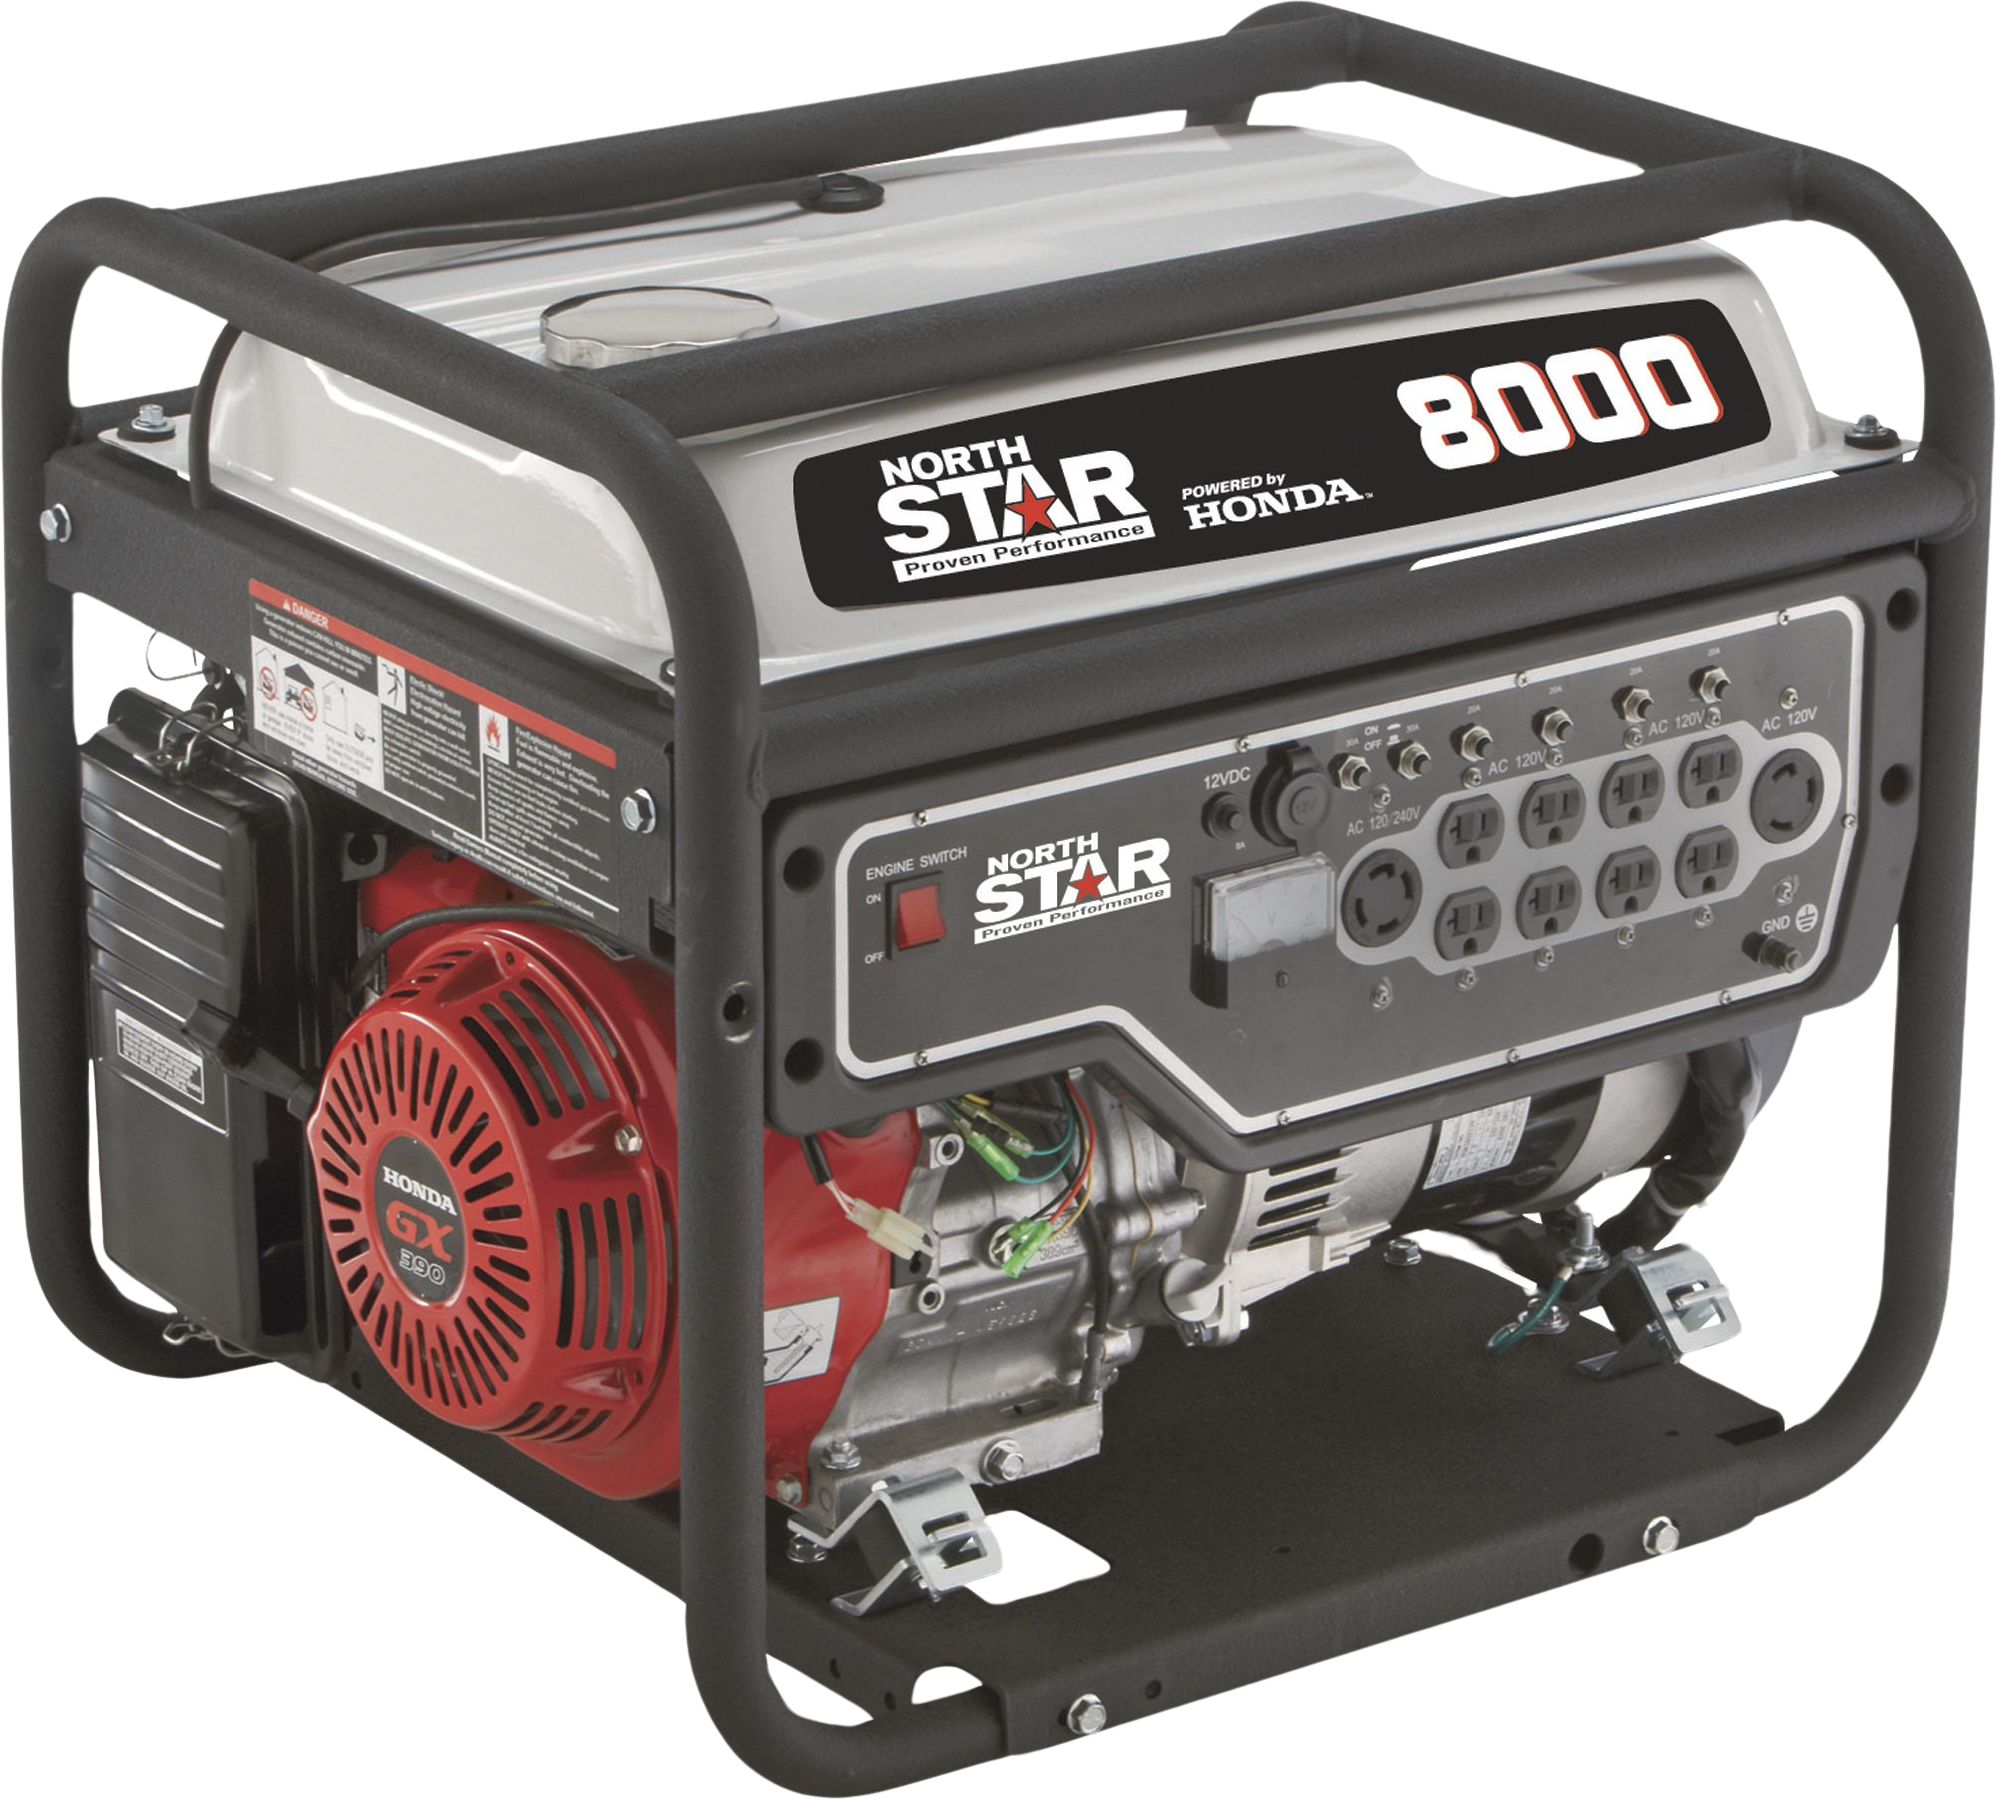 NorthStar, NorthStar 165603 Generator Honda Low THD 6600W/8000W Gas New